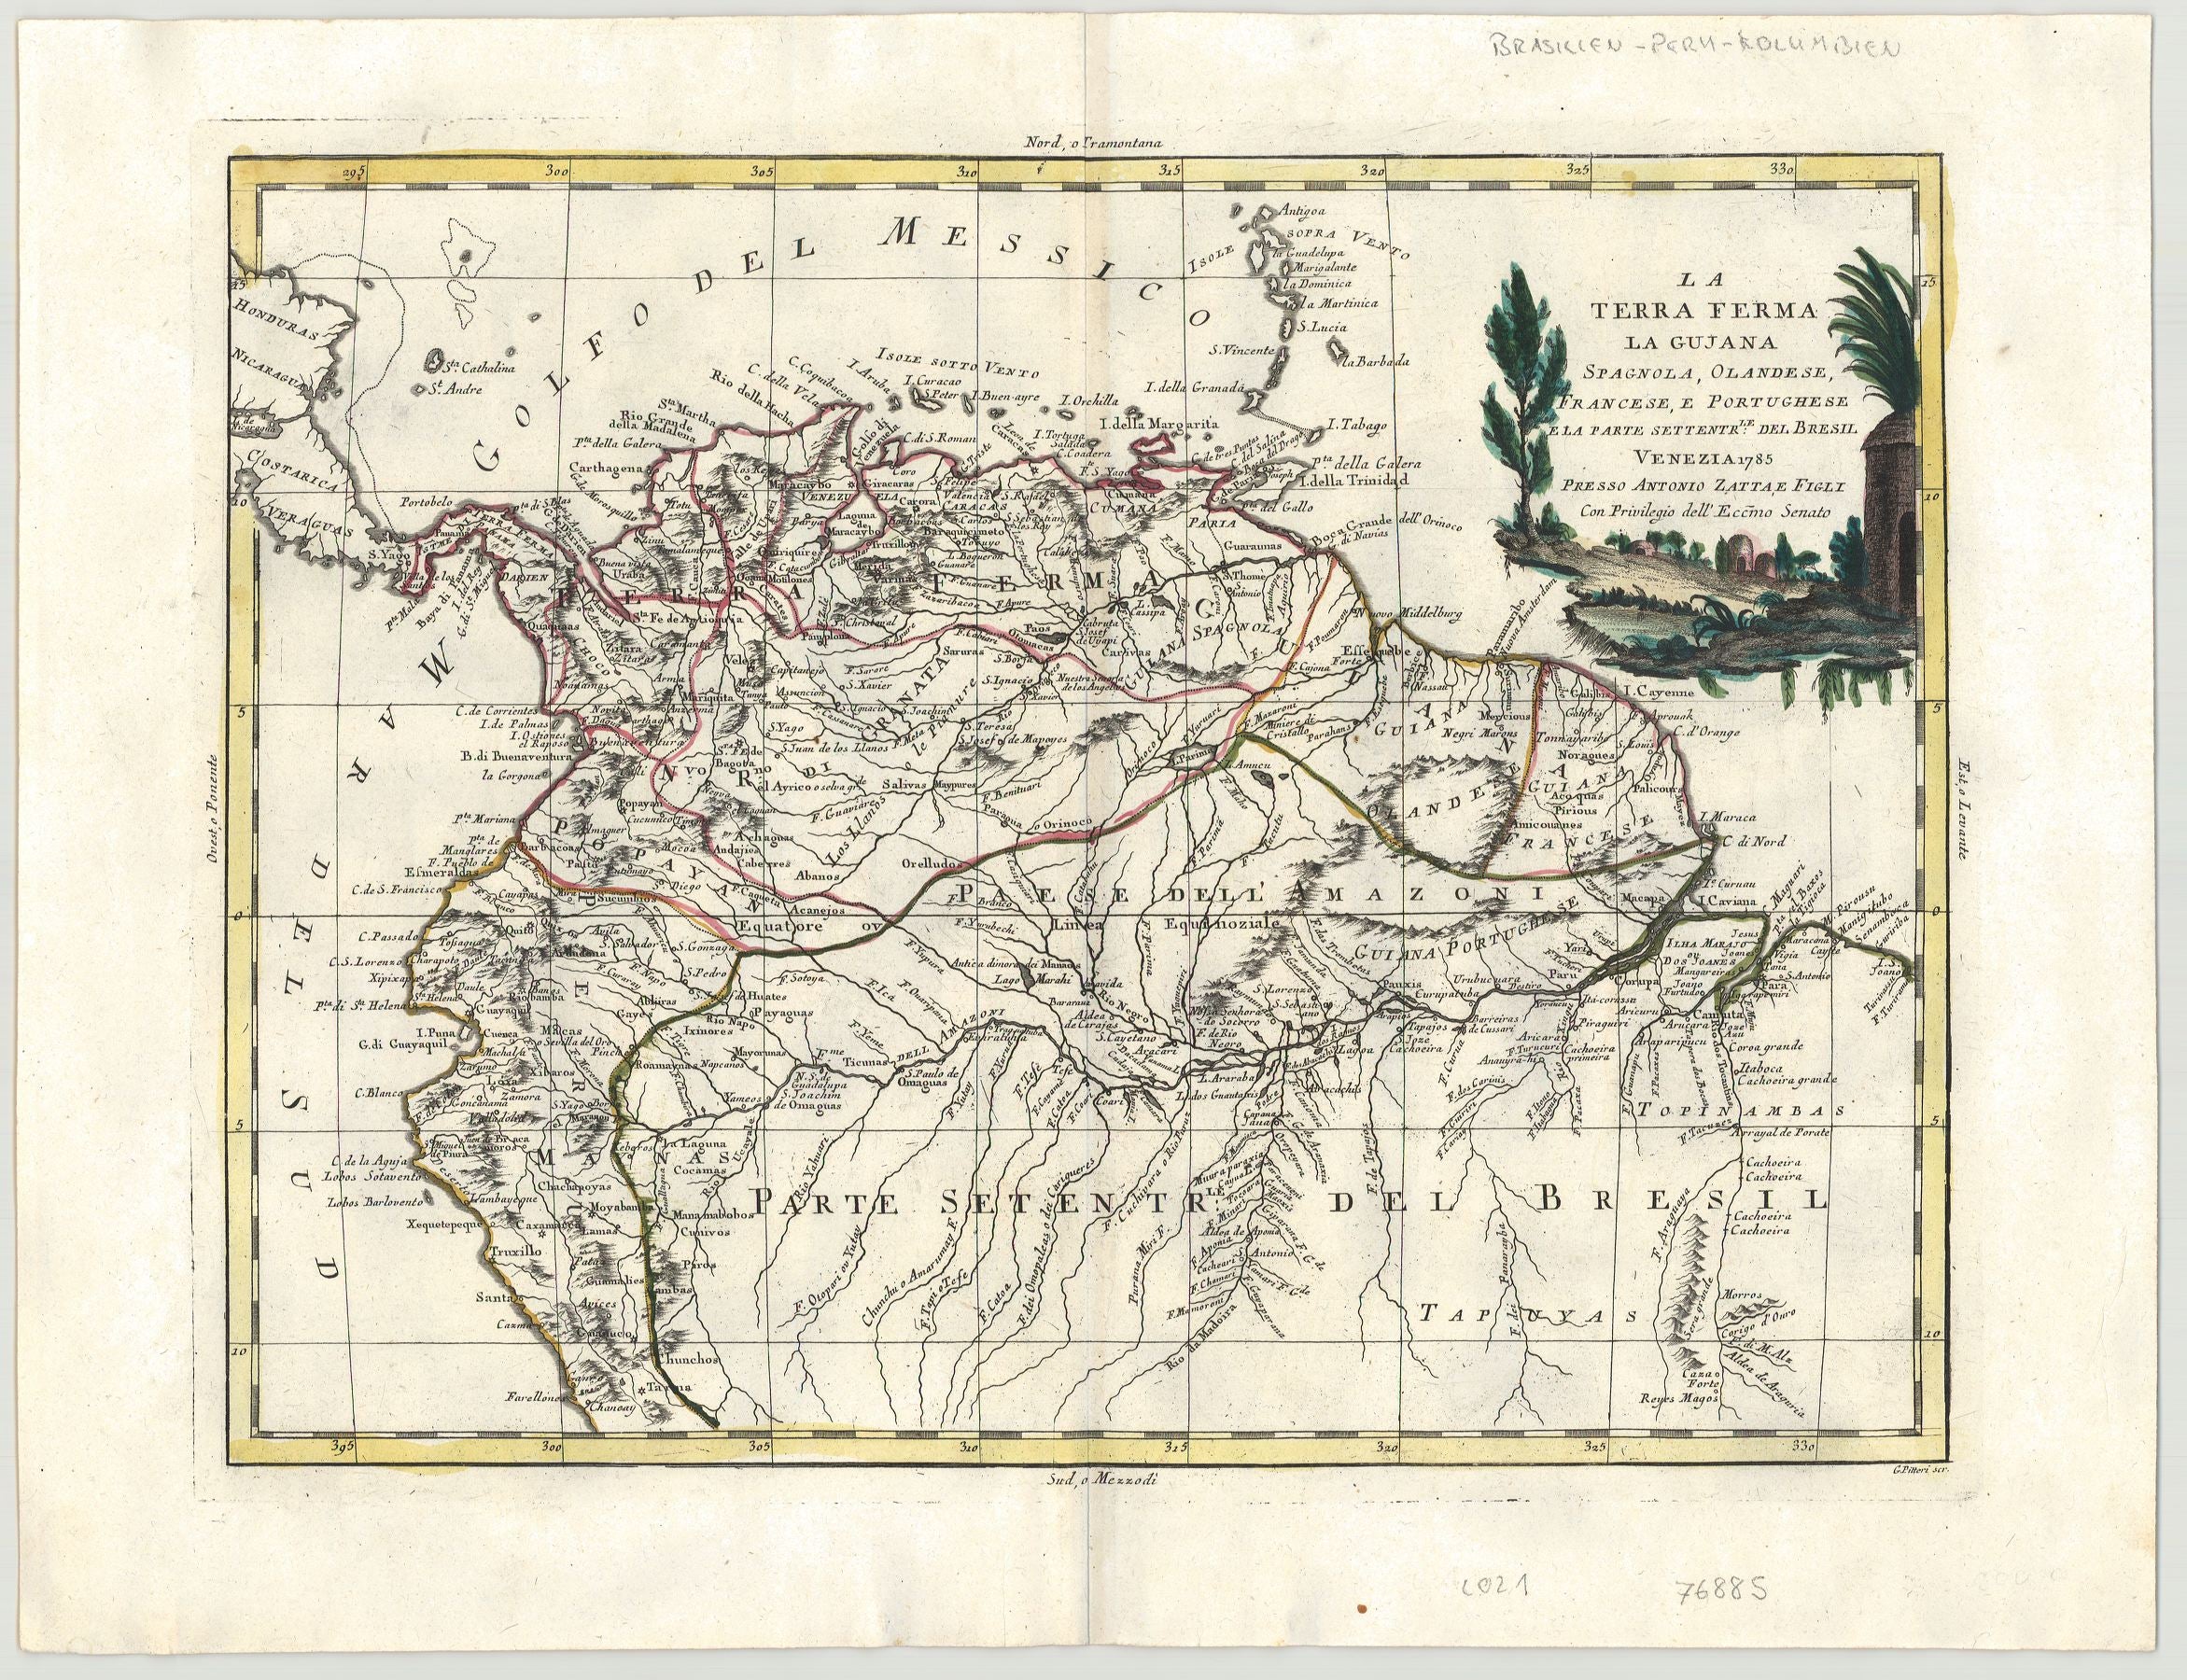 Südamerika im Jahr 1785 von Antonio Zatta